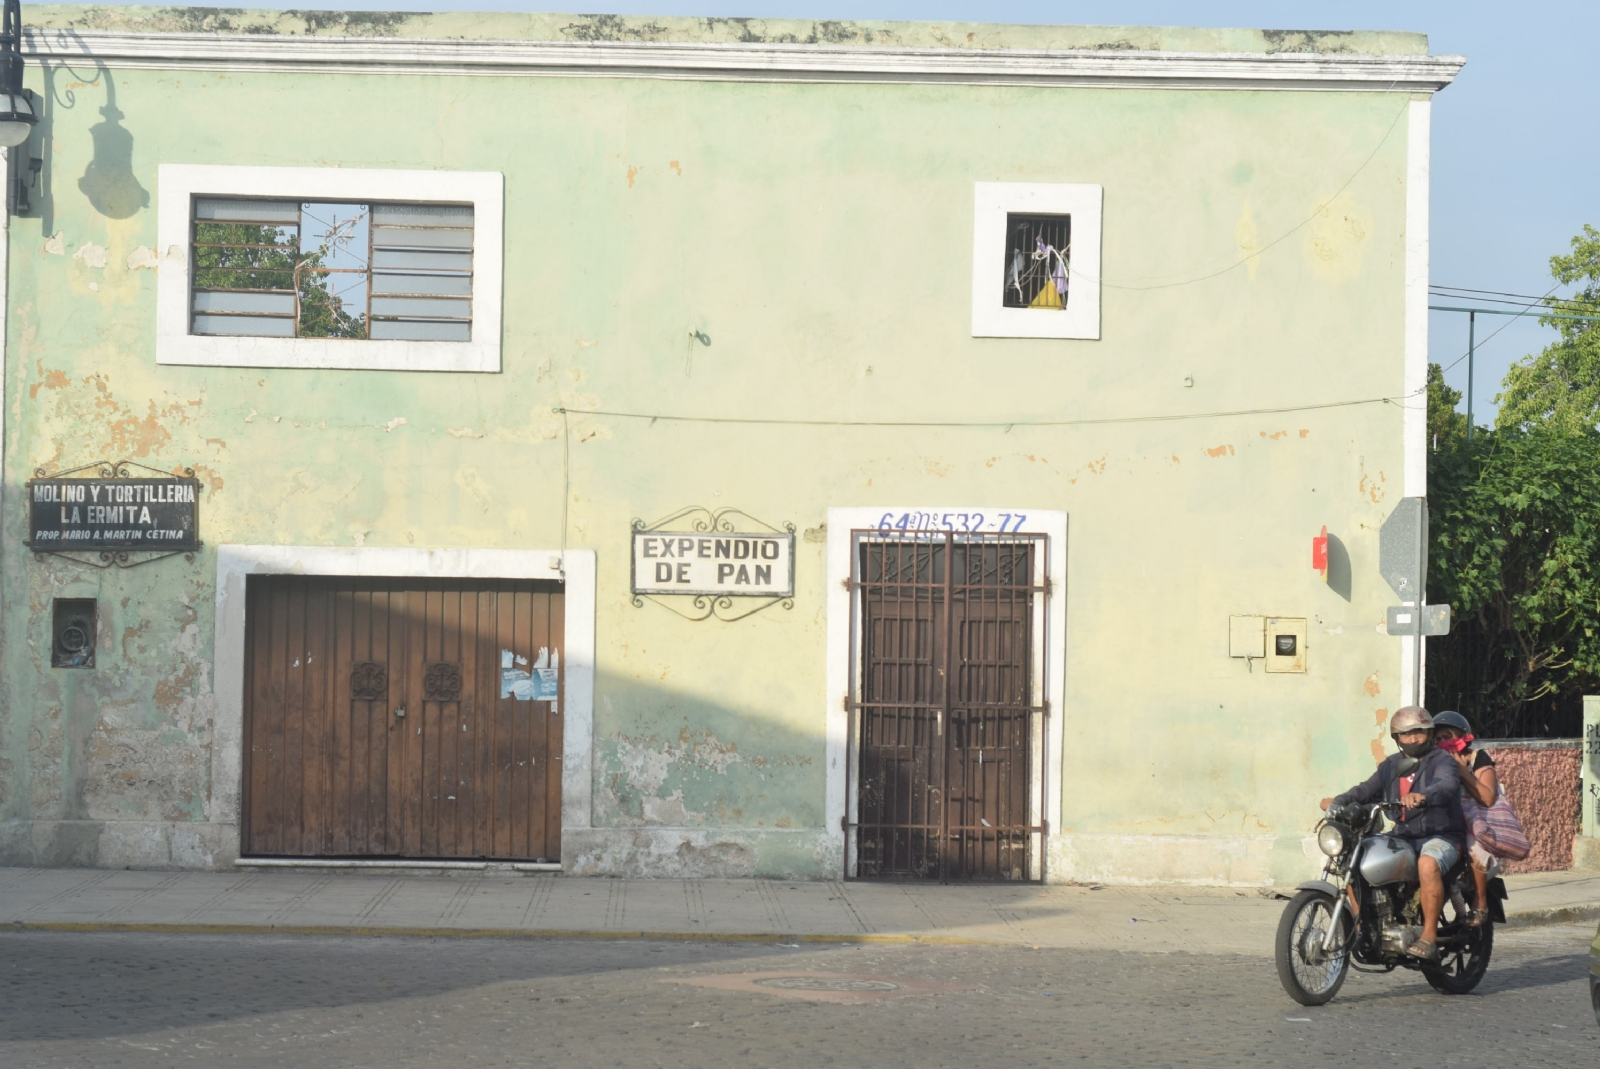 Este lugar se convertirá en el primer 'Barrio Mágico' de Mérida